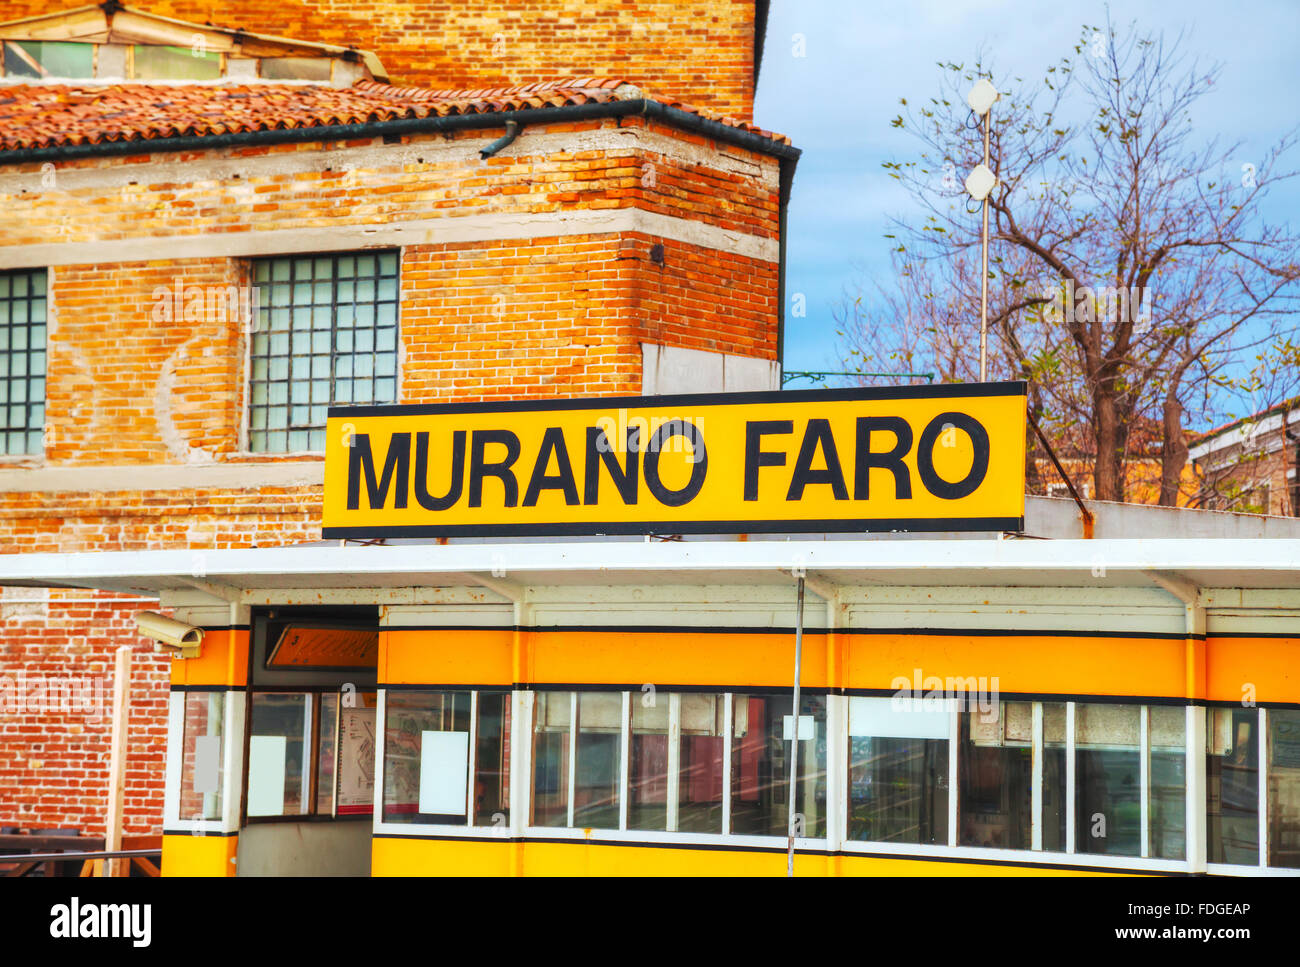 MURANO, ITALY - NOVEMBER 23: Murano Faro sign at the vaporetto stop on November 23, 2015 in Murano, Venice, Italy. Stock Photo